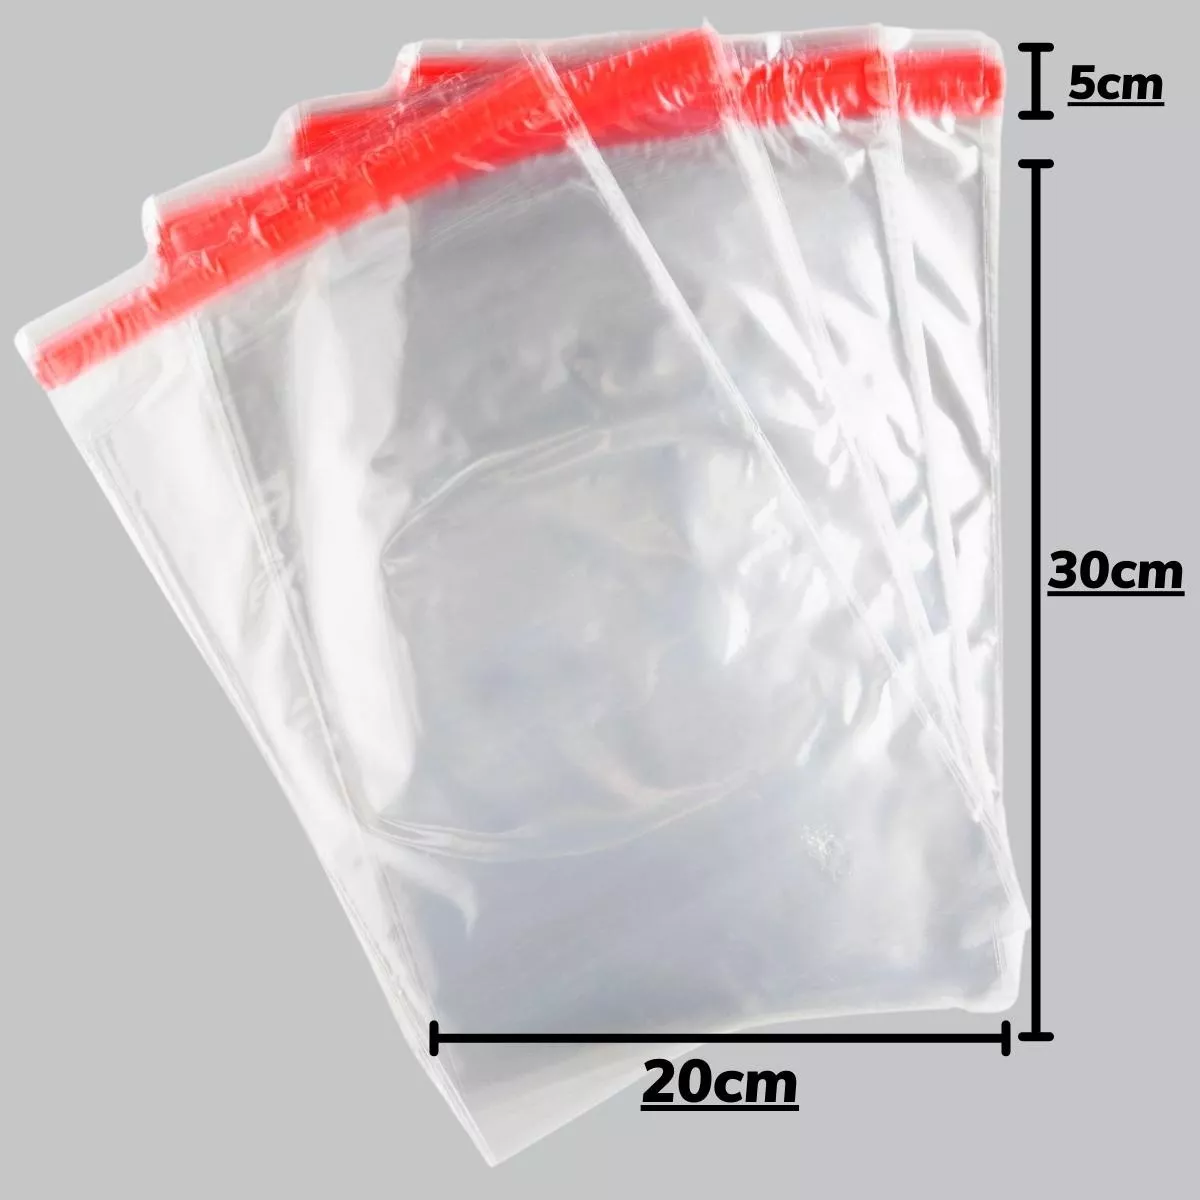 Segunda imagem para pesquisa de saco plastico adesivado